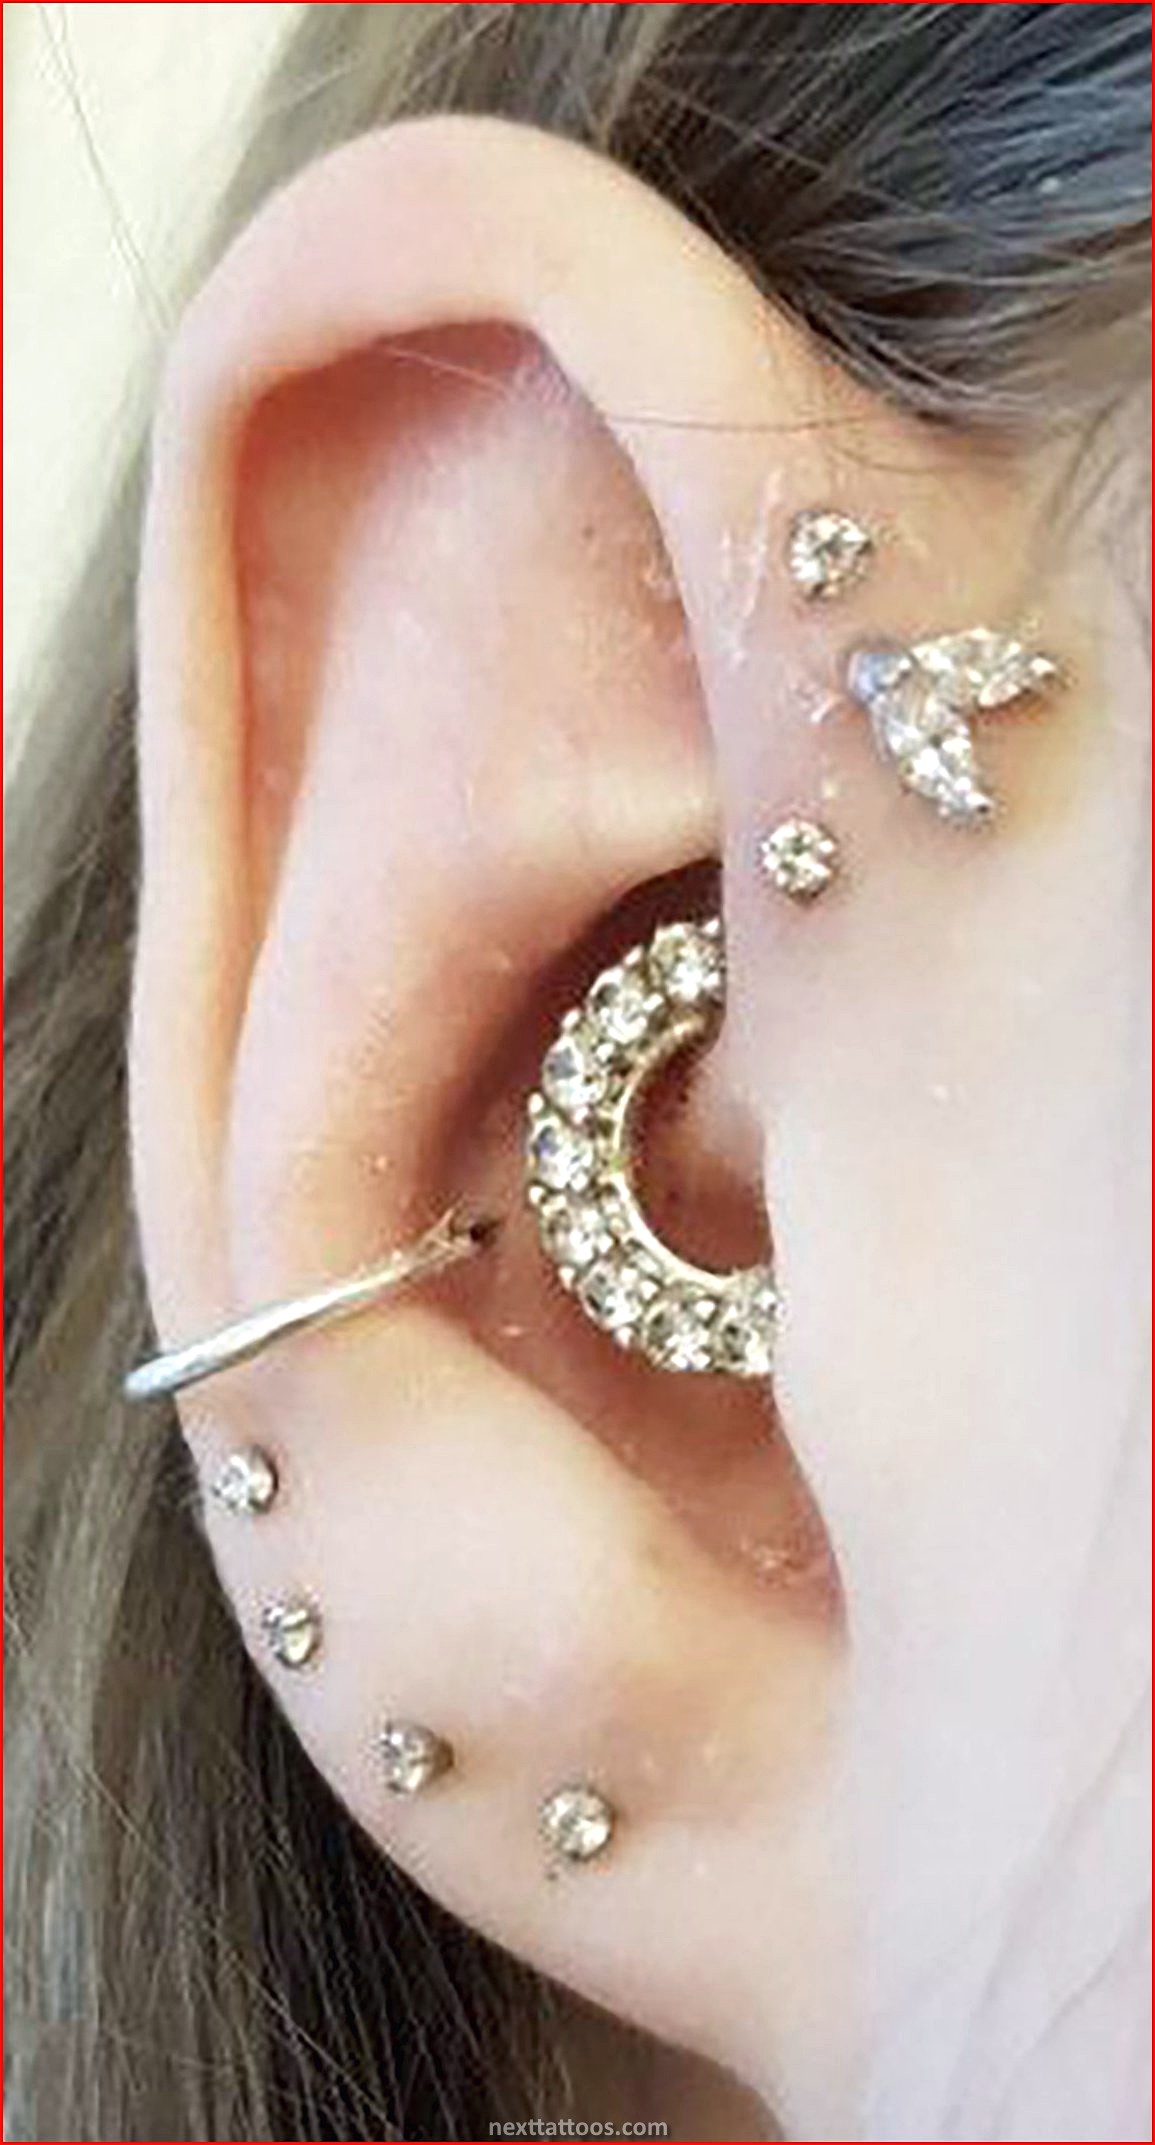 Women's Ear Piercing Ideas